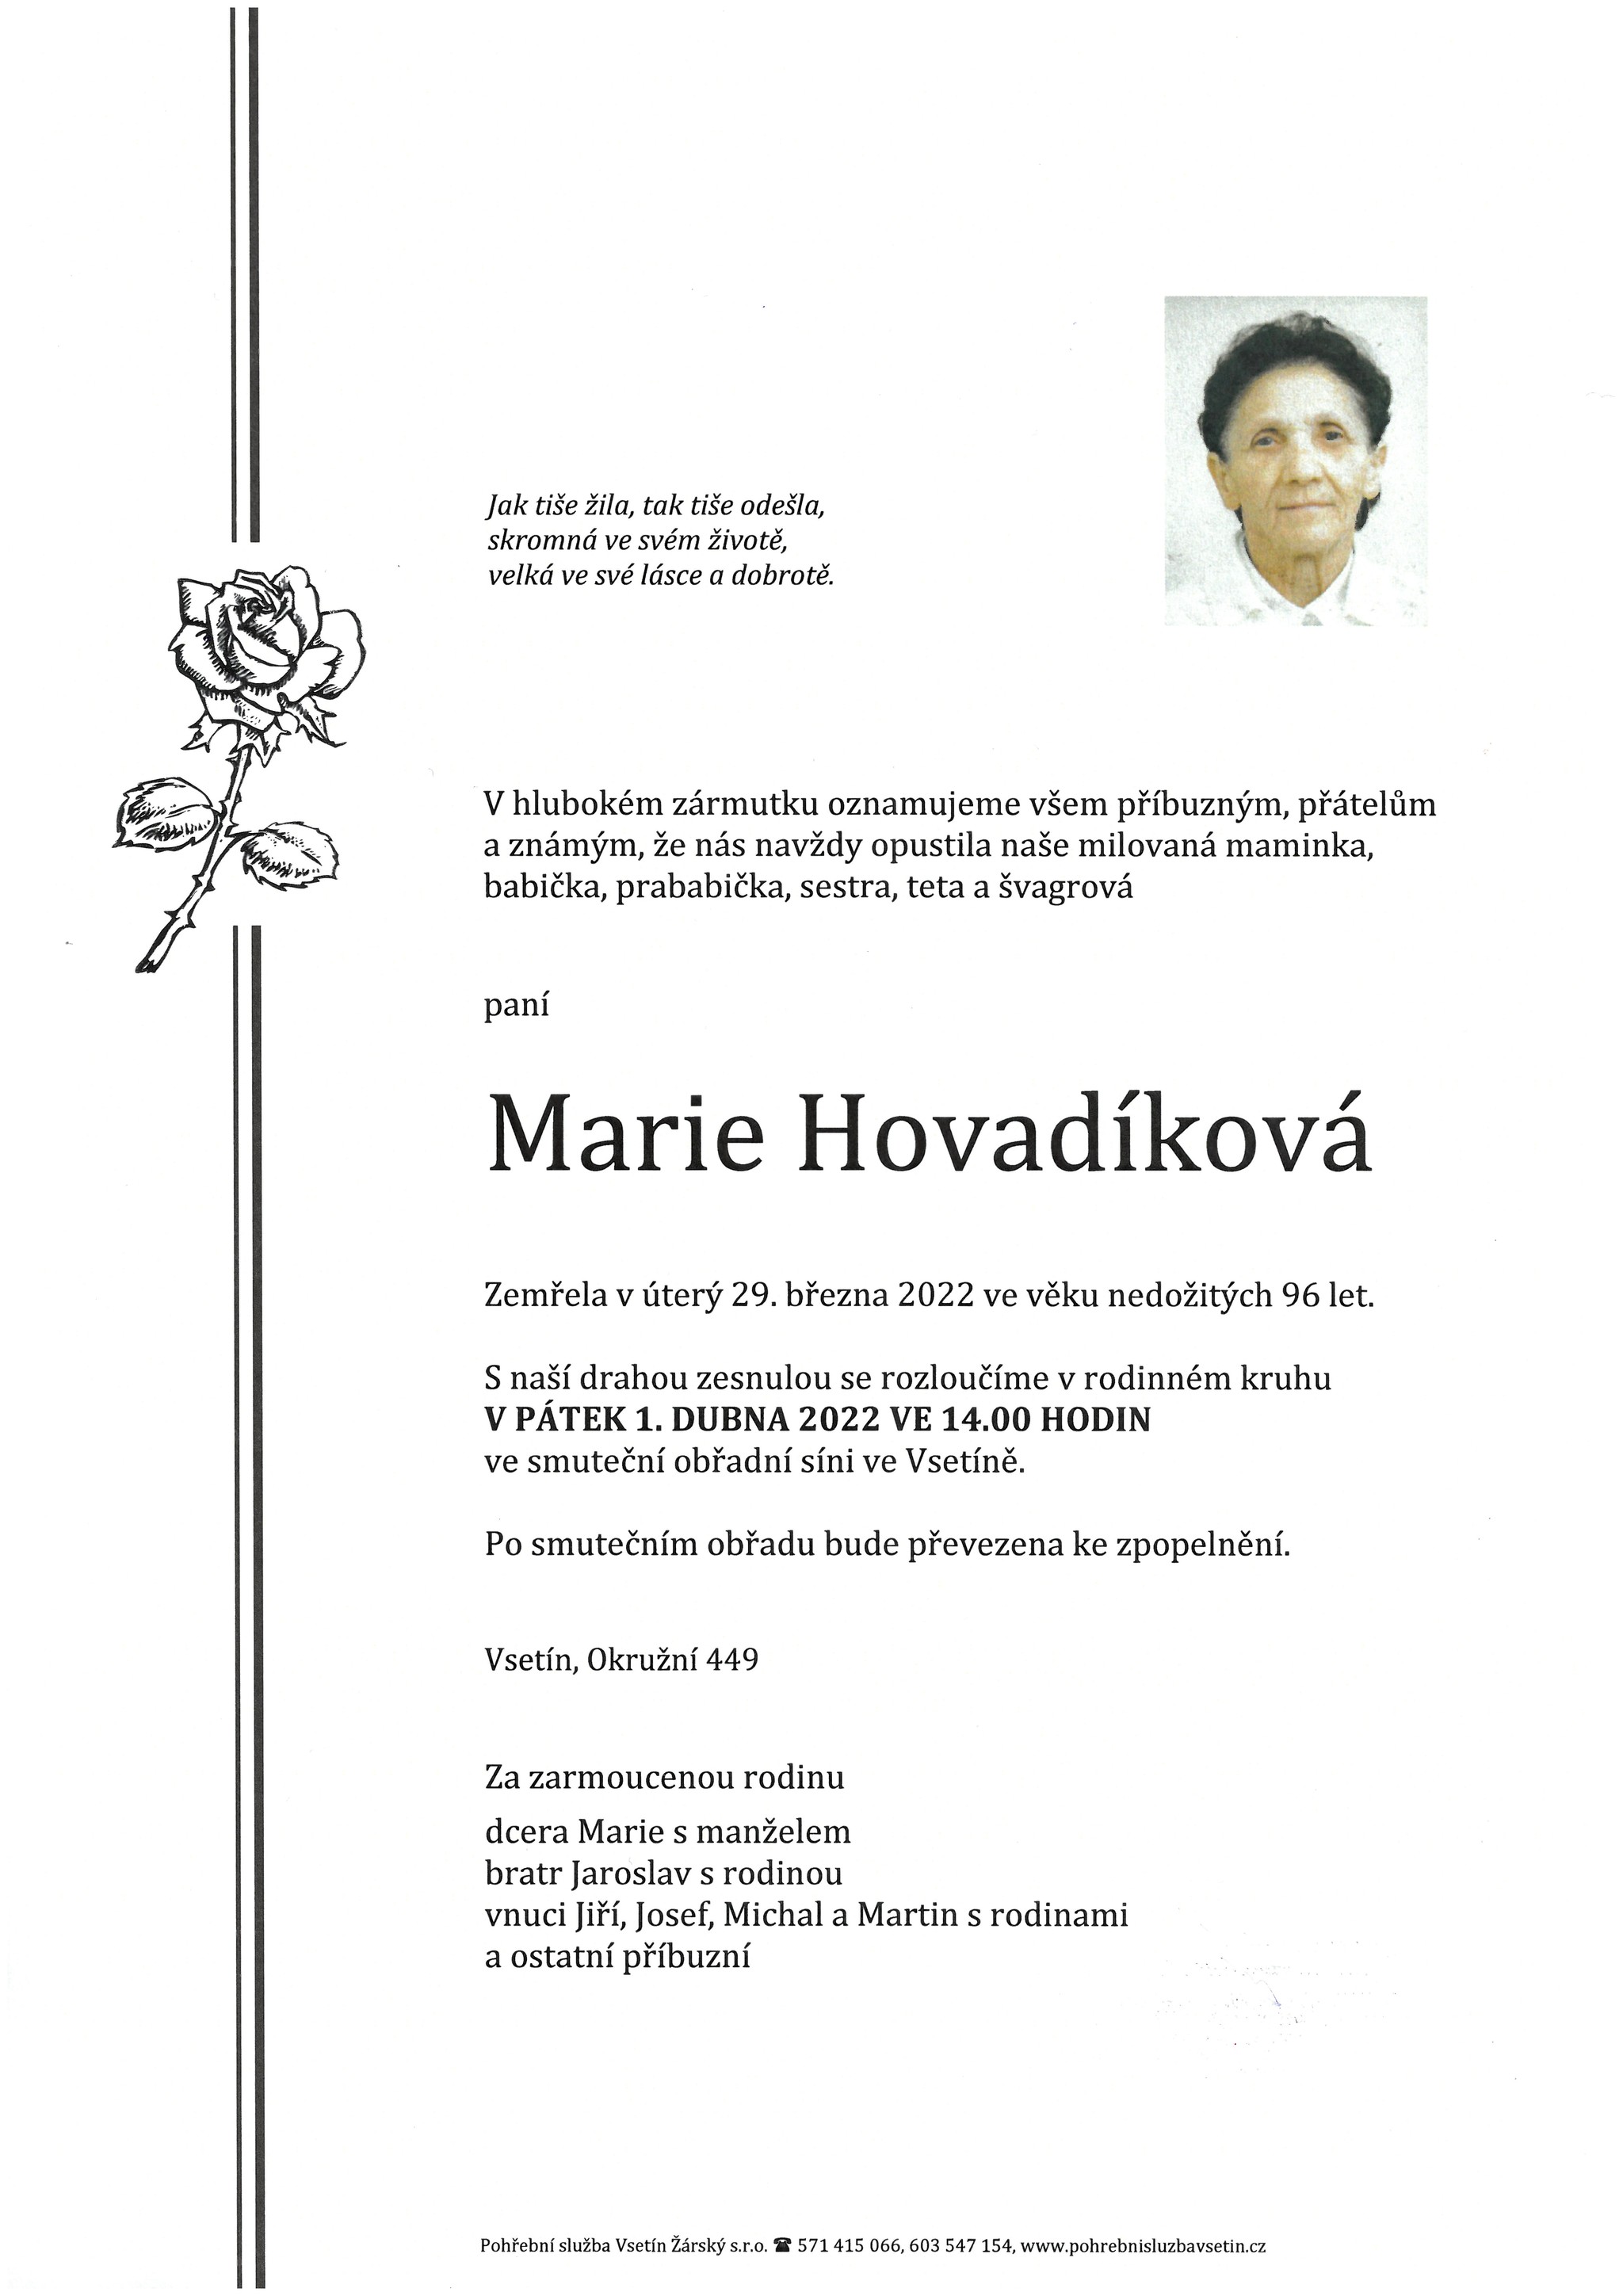 Marie Hovadíková